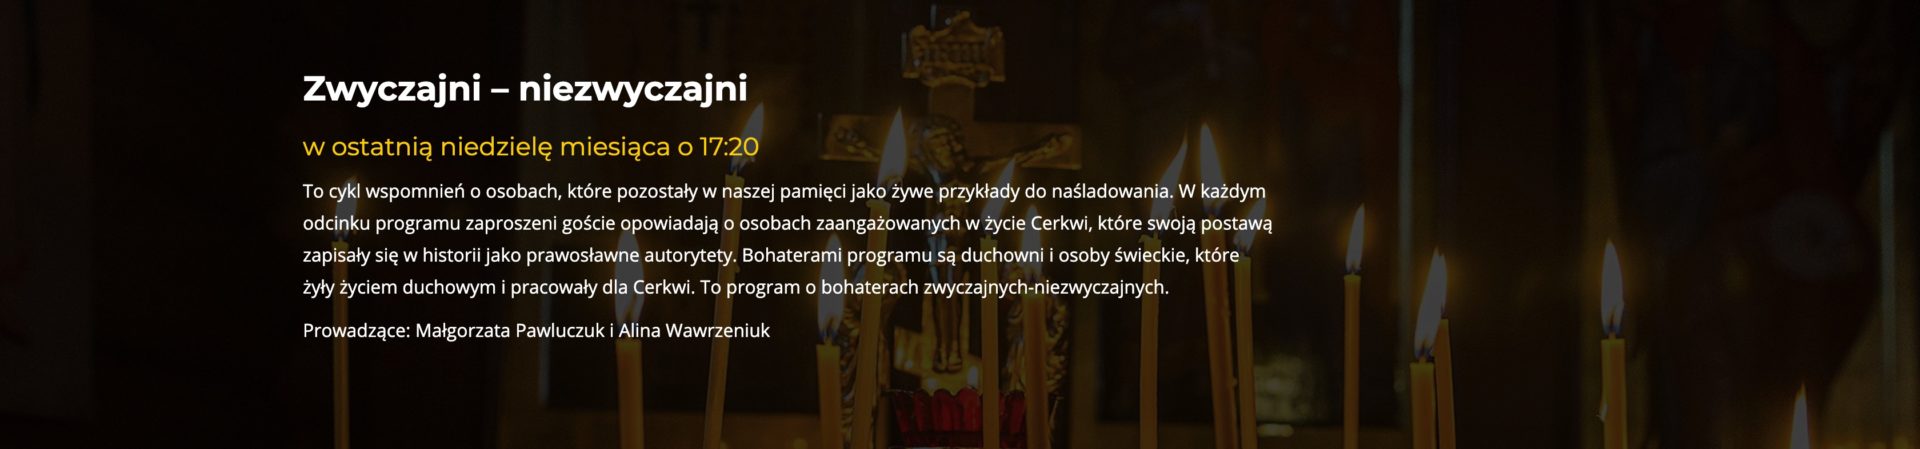 Radio Orthodoxia 1027fm Pierwsza W Polsce Prawosławna Rozgłośnia Radiowa 2270